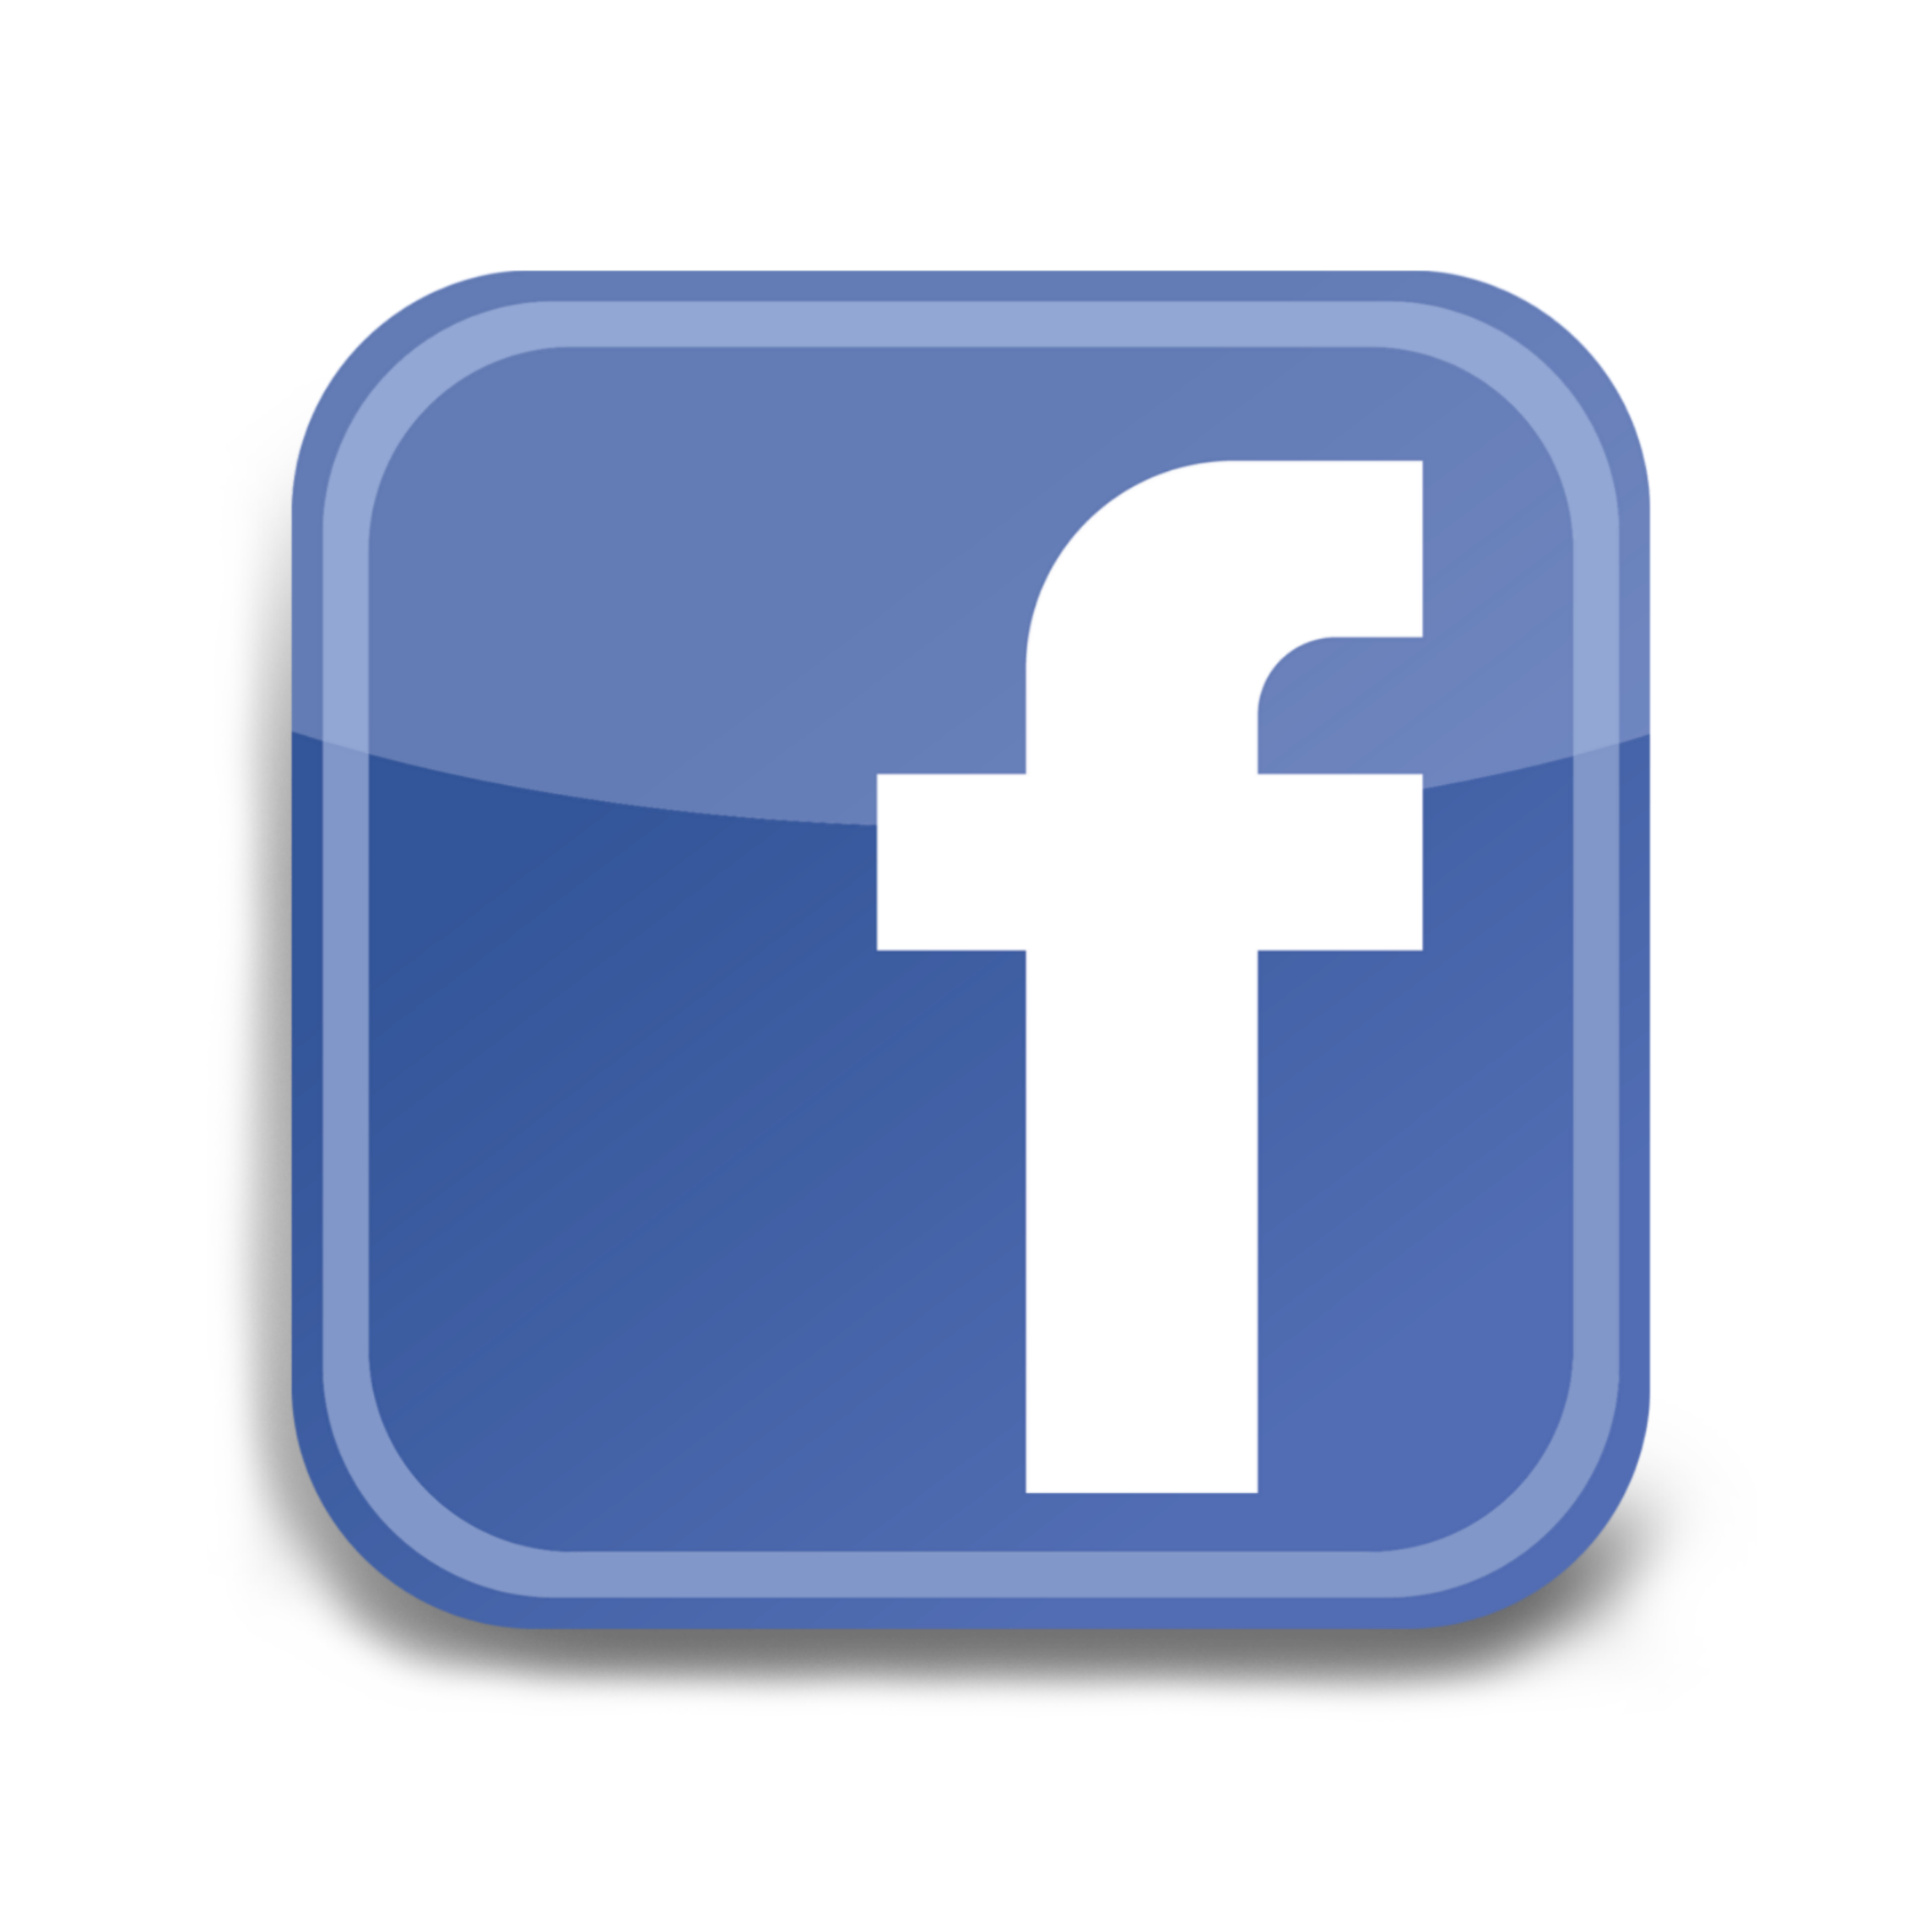  facebook  face logo  logotip logoface picsart 